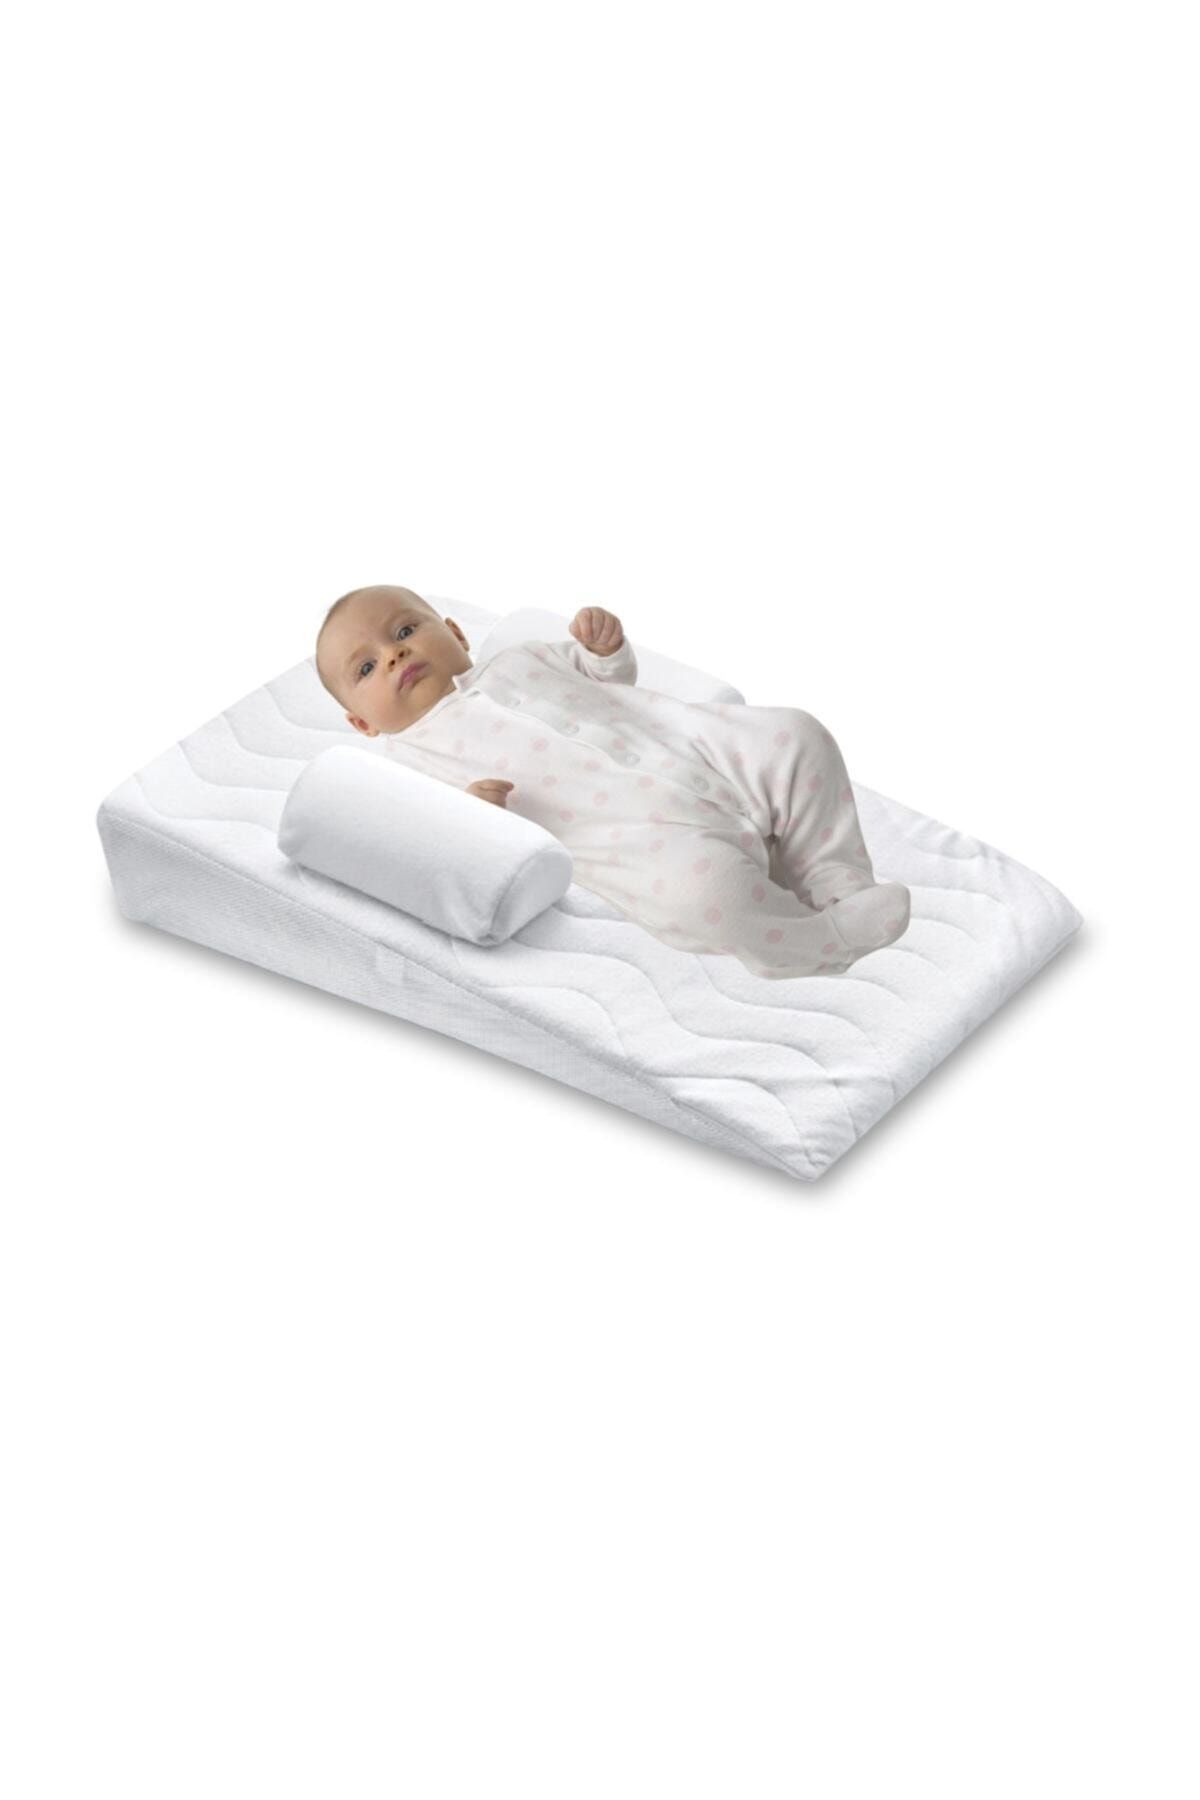 PUKİDO Bebek Reflü Yastık  40*65 cm